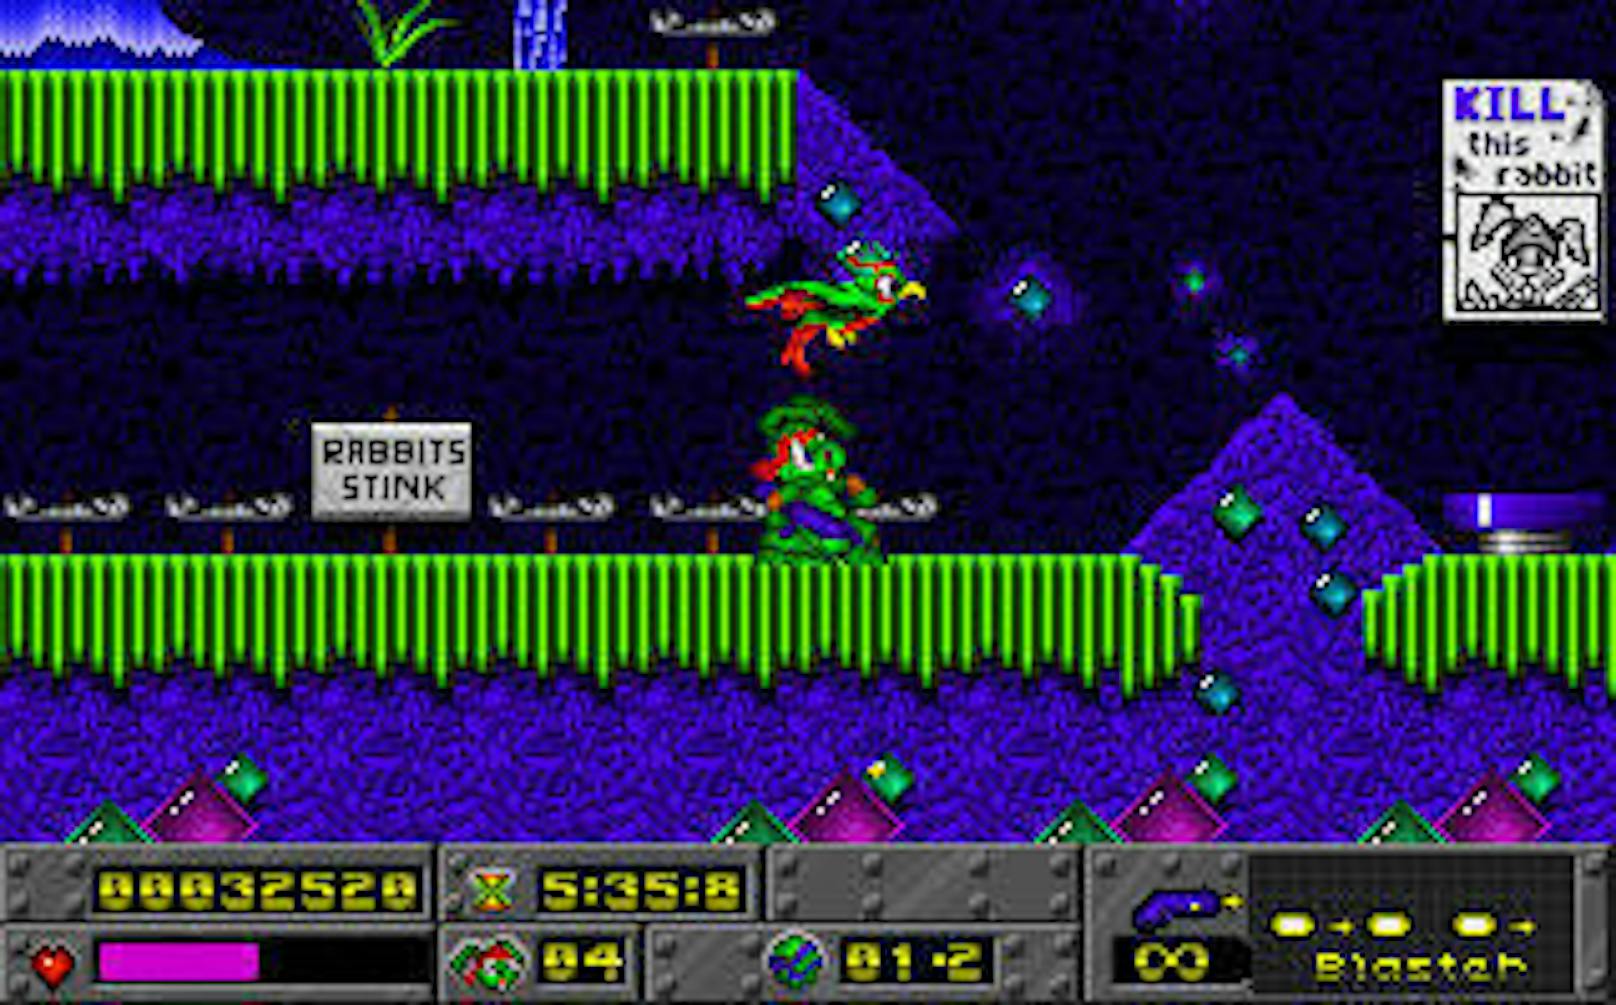 <b>1994:</b> Vorerst blieb es aber noch bei 2-D-Games. Cliff Bleszinski war einer der Chefentwickler von "Jazz Jackrabbit". Im Spiel schlüpfte man in die Rolle eines Hasen namens Jazz, der eine Prinzessin von einer bösen Schildkröte retten musste. Das Spiel erschien auch als Shareware, wo ein Teil des Games kostenlos gespielt werden konnte.